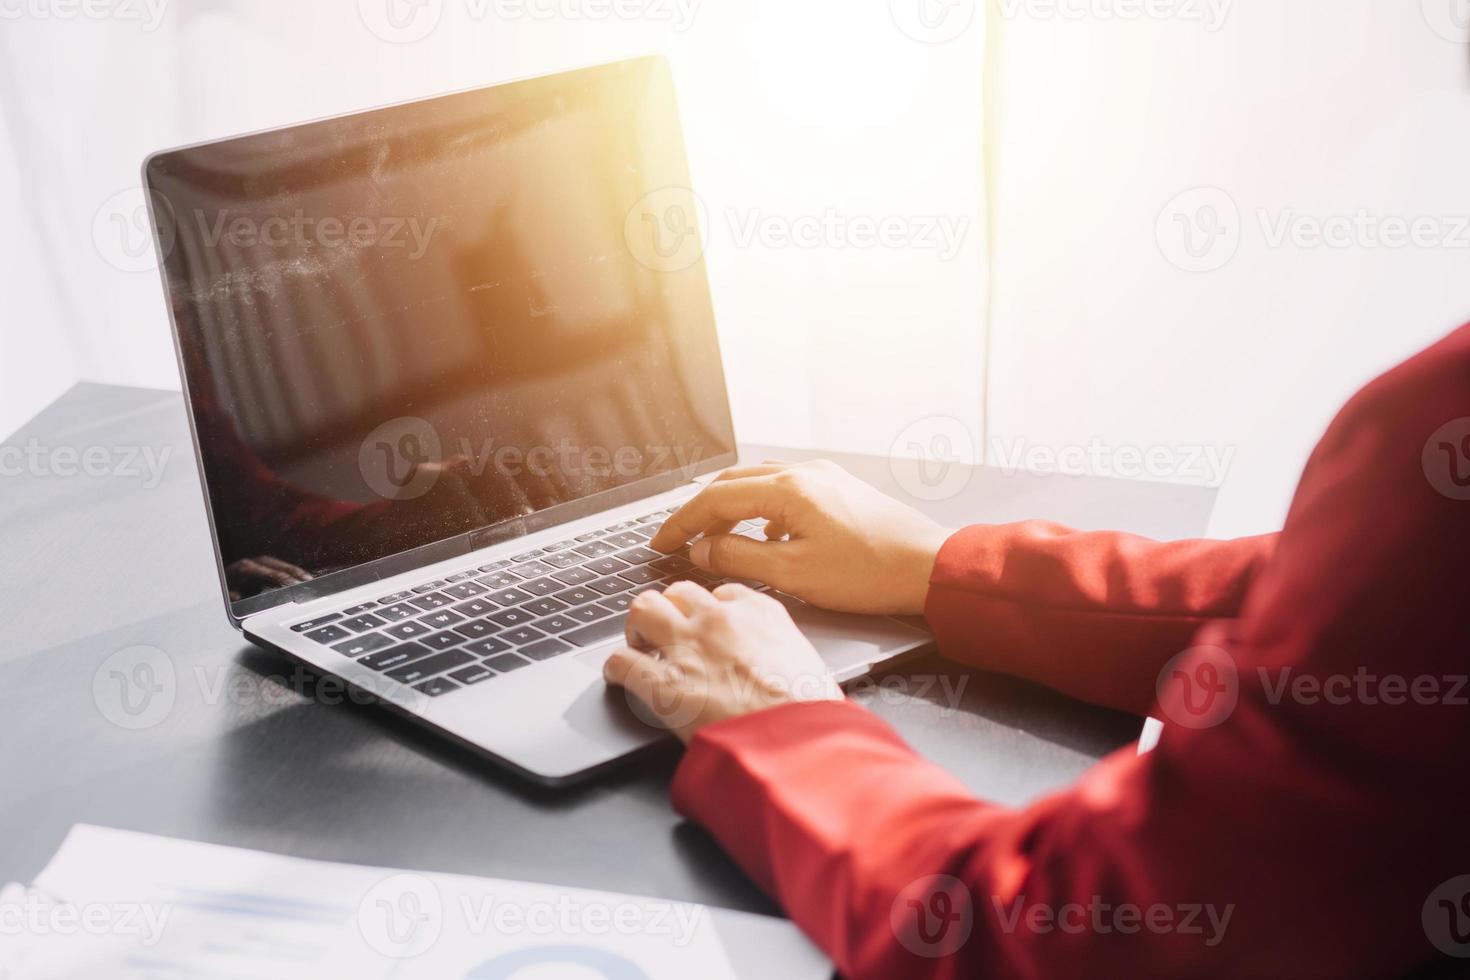 femme d'affaires asiatique utilisant une calculatrice et un ordinateur portable pour faire des finances mathématiques sur un bureau, fiscalité, rapport, comptabilité, statistiques et concept de recherche analytique photo